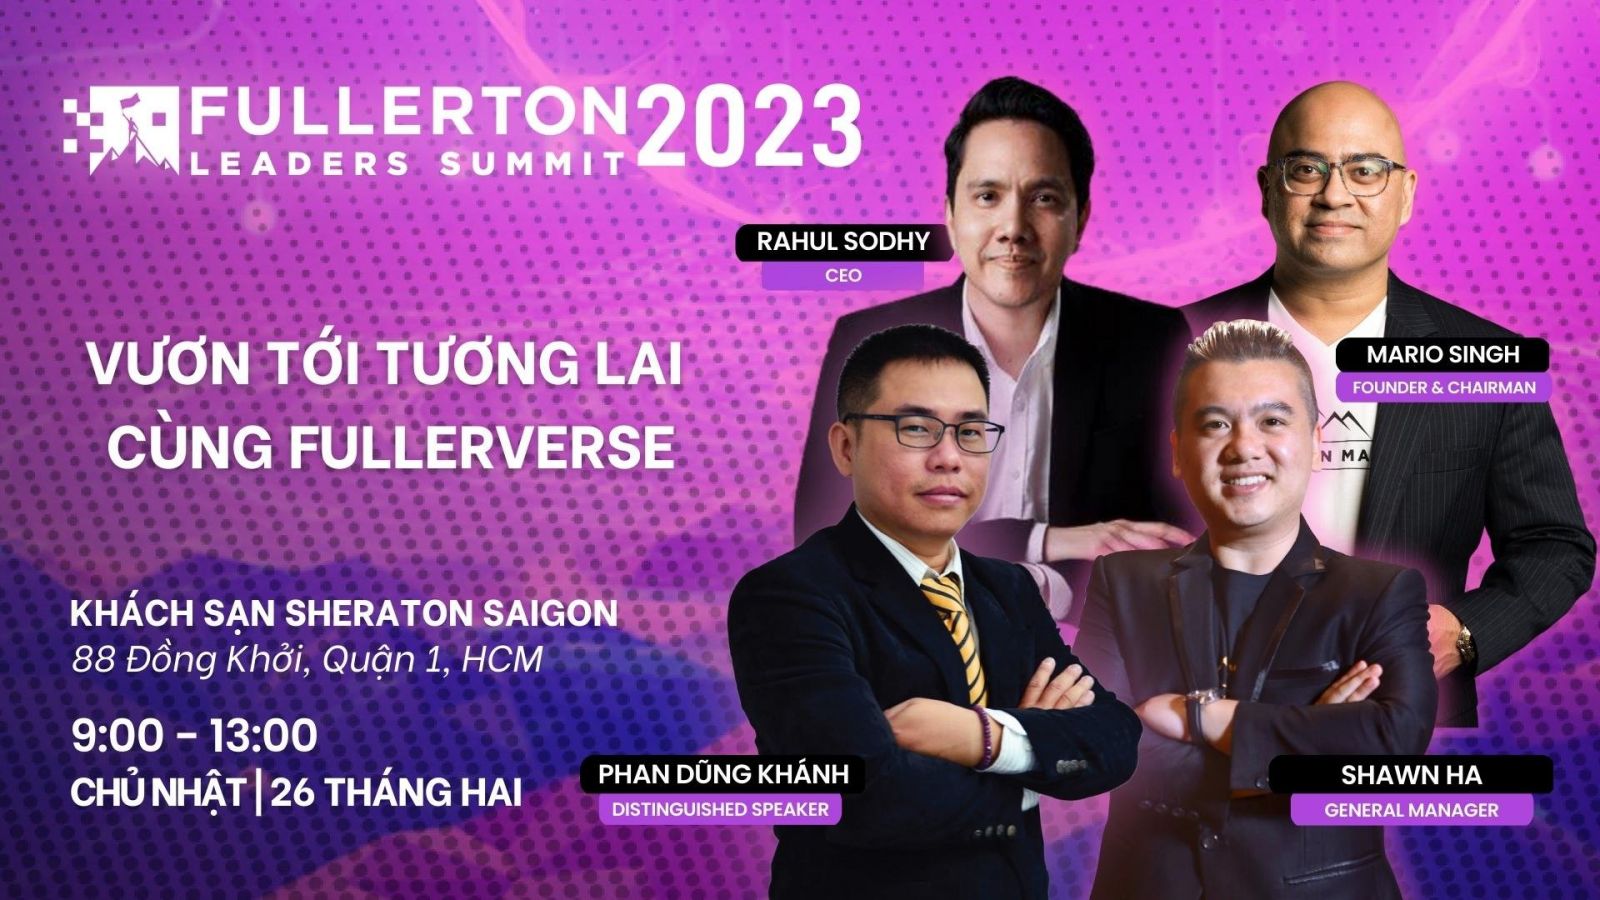 Fullerton Markets sẽ tổ chức Hội nghị Thượng đỉnh các Nhà Lãnh Đạo Fullerton 2023 lần đầu tiên tại Việt Nam với chủ đề “Vươn tới tương lai cùng Fullerverse.”